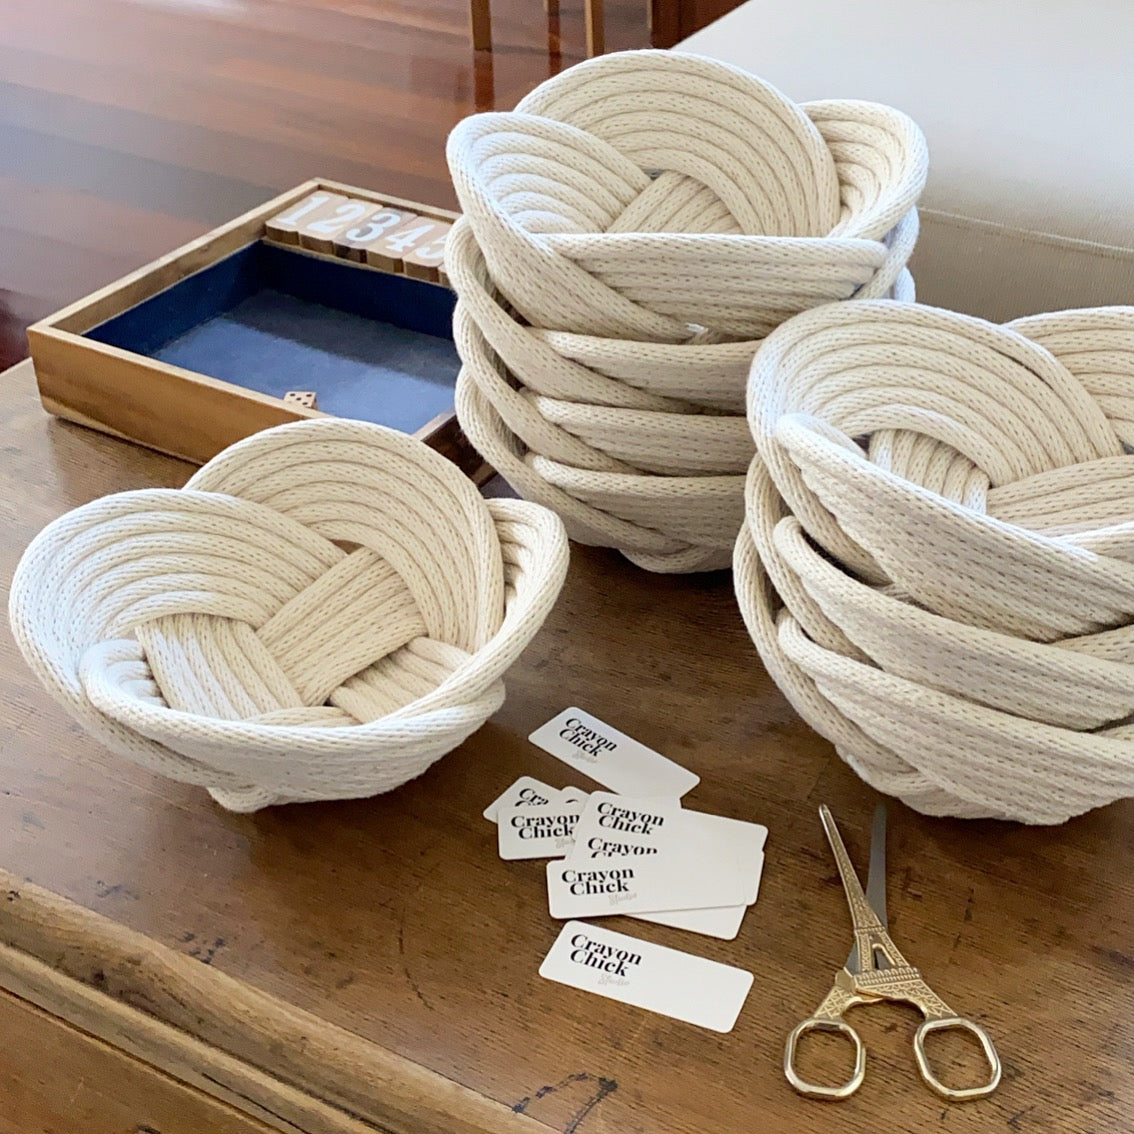 Weave bowls - natural cotton